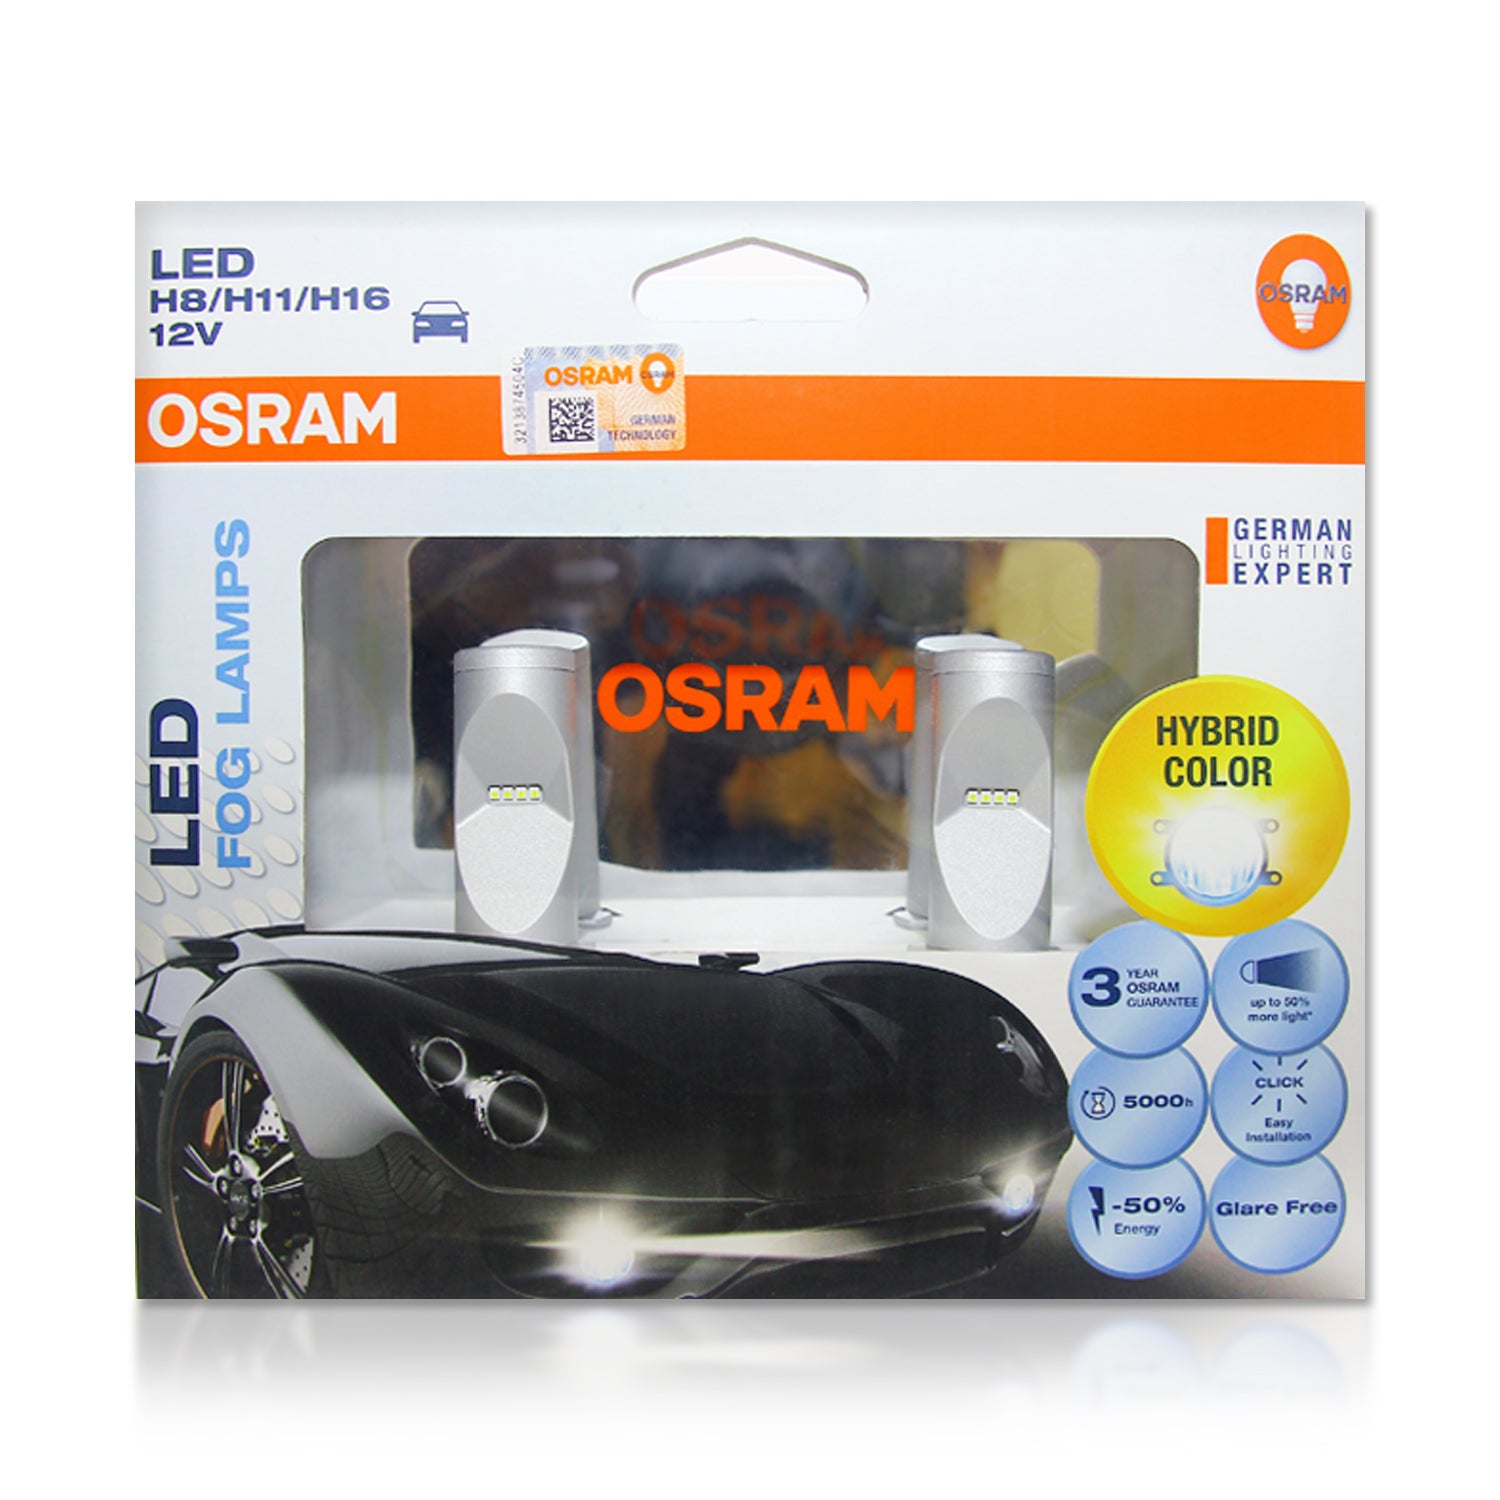 Osram LEDriving FOG LAMP FL H8/H11/H16 Gen2 67219CW - 6000K - MK LED